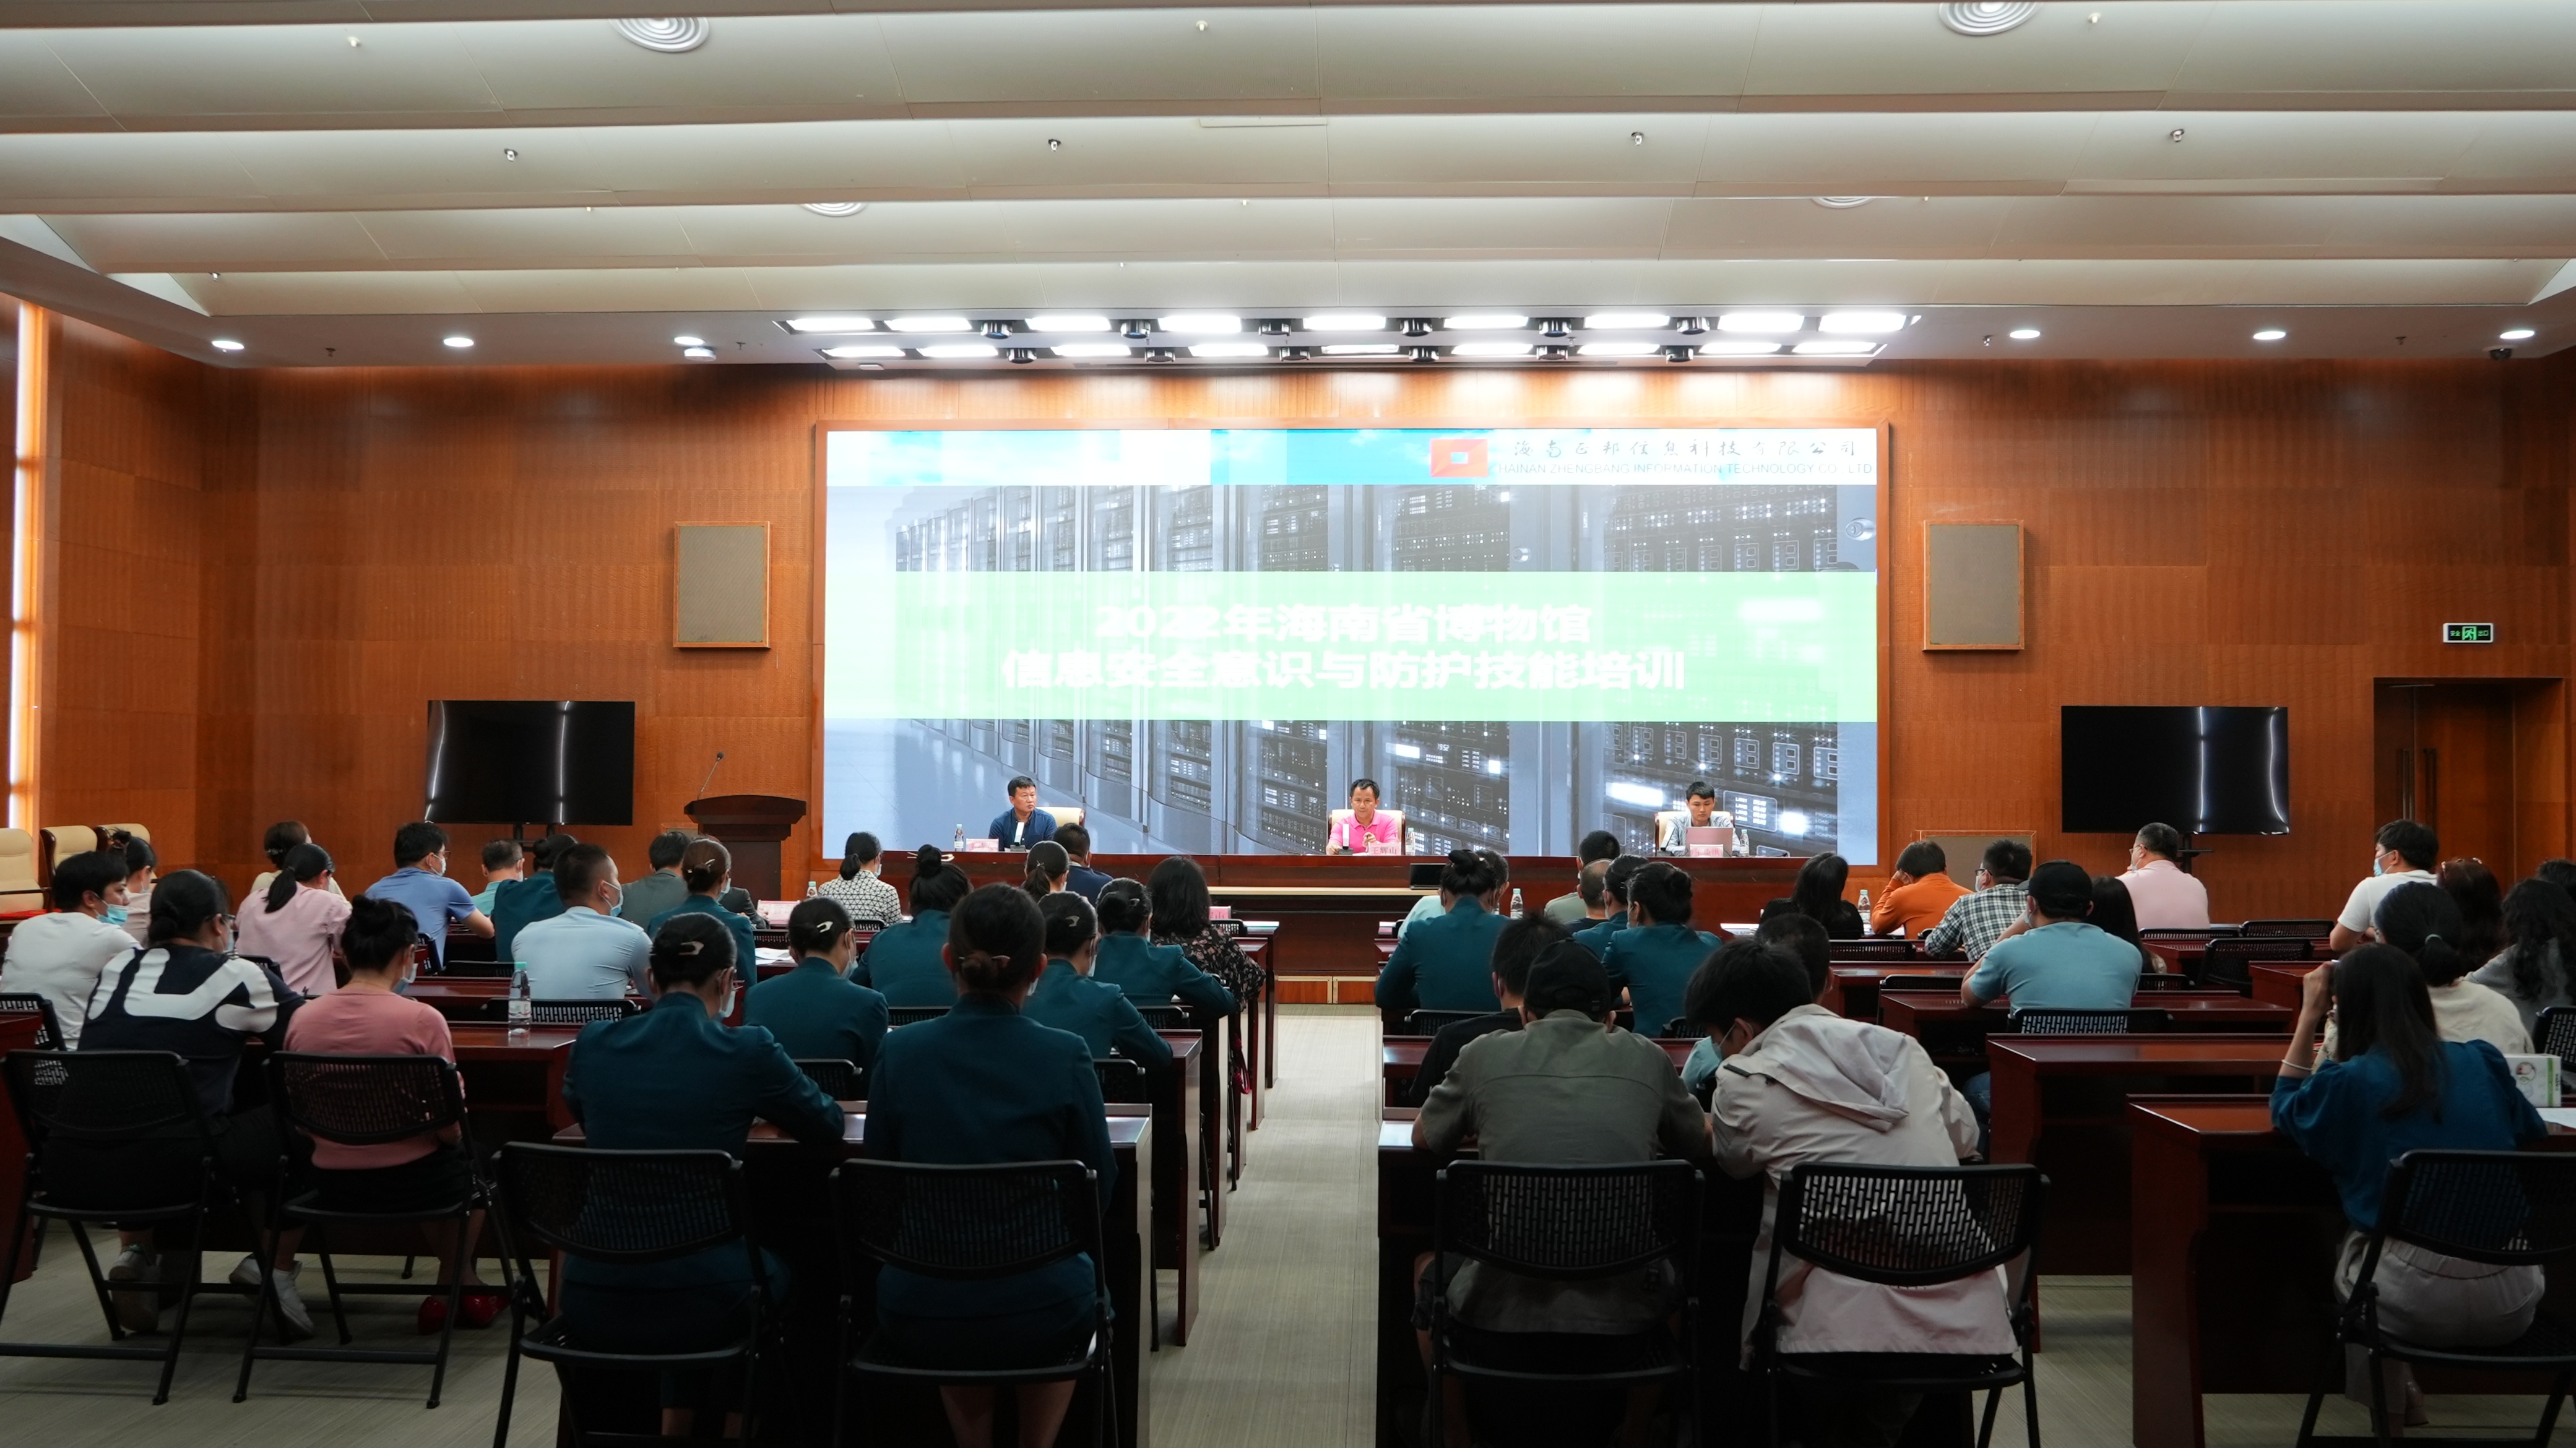 海南省博物馆举办信息安全意识与防护技能培训